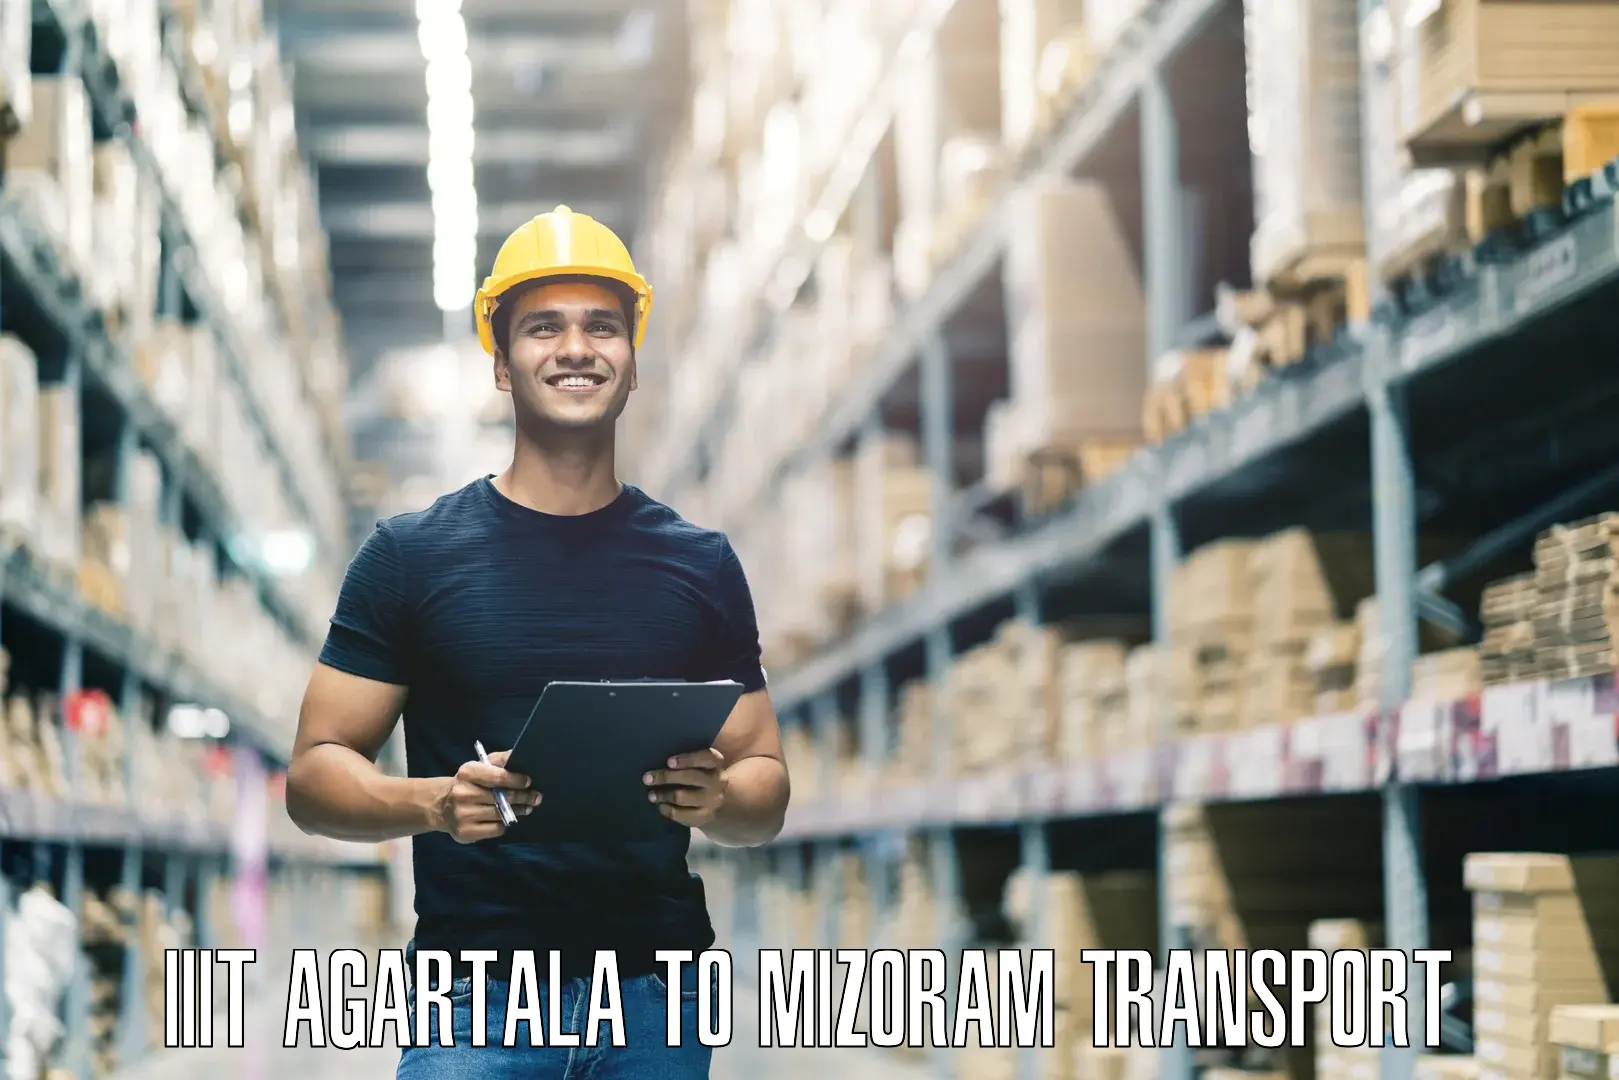 Transport in sharing IIIT Agartala to NIT Aizawl